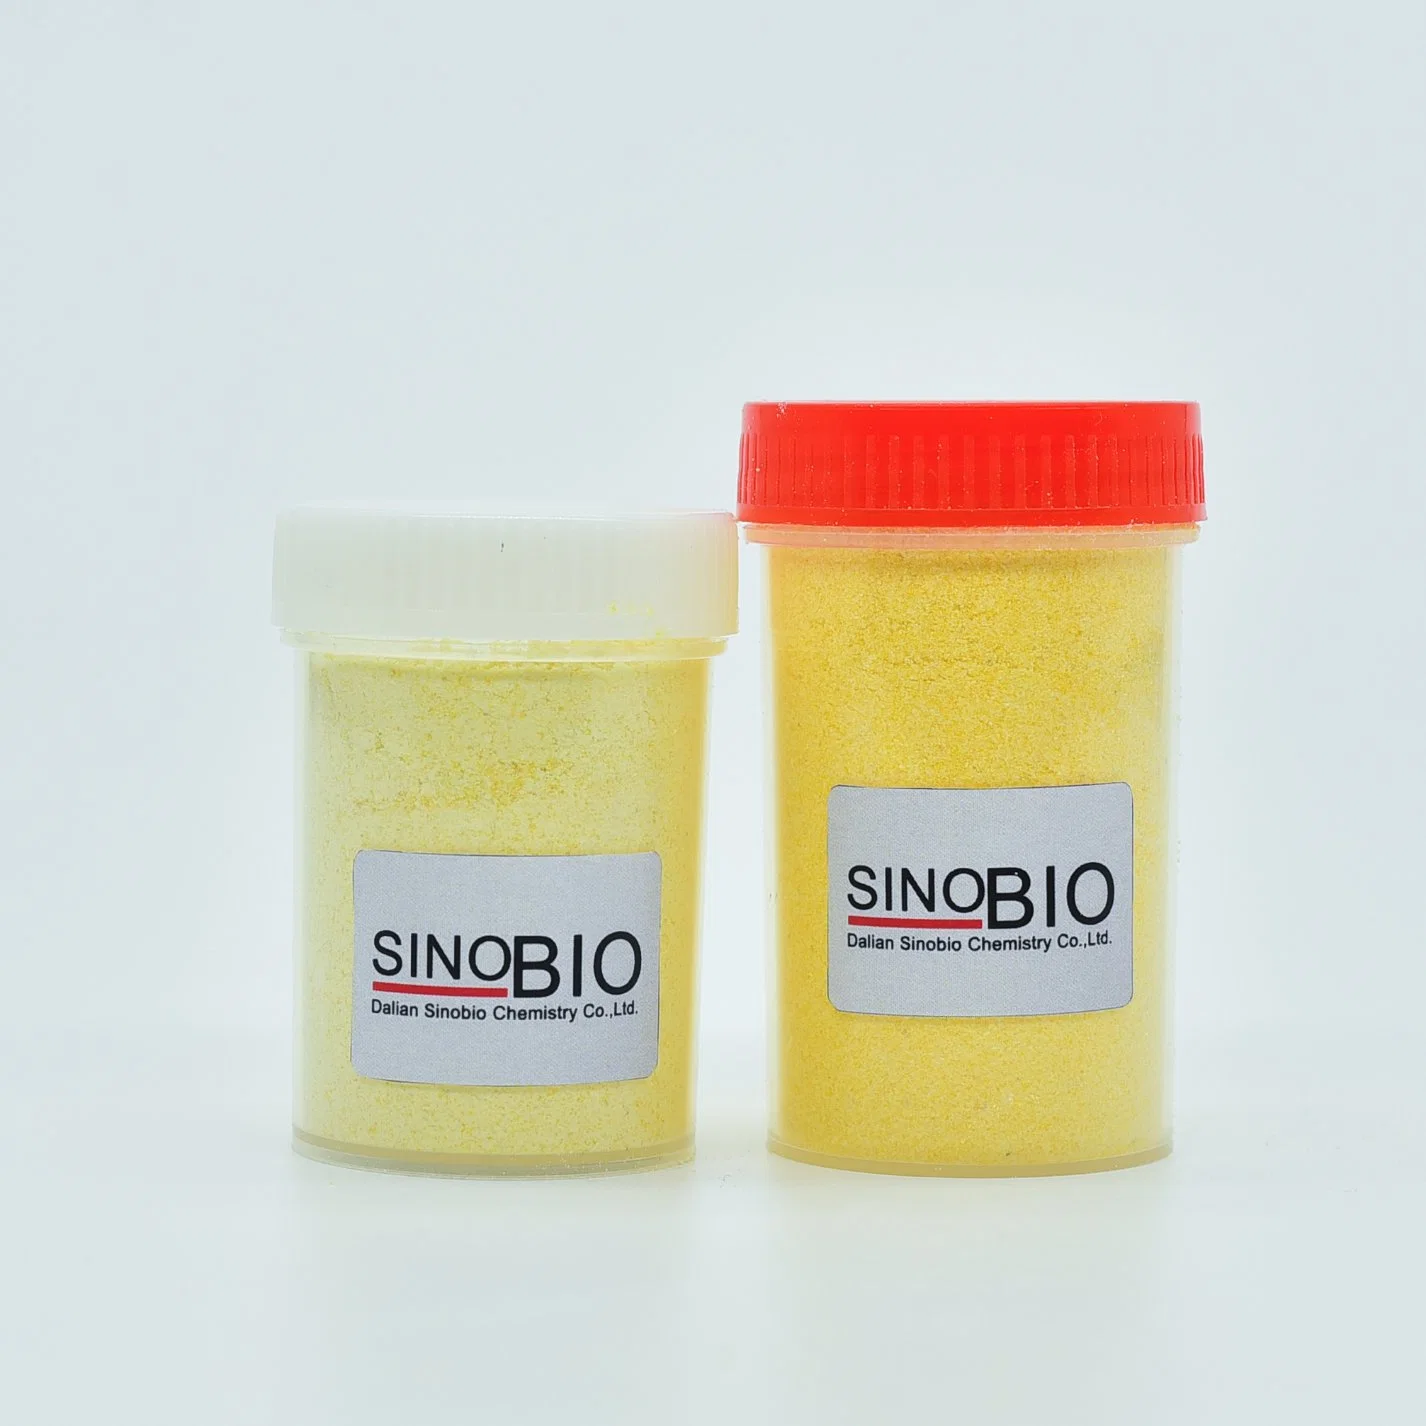 High Purity Sinoibio Organic Intermediate 1, 4-Naphthoquinone CAS 130-15-4